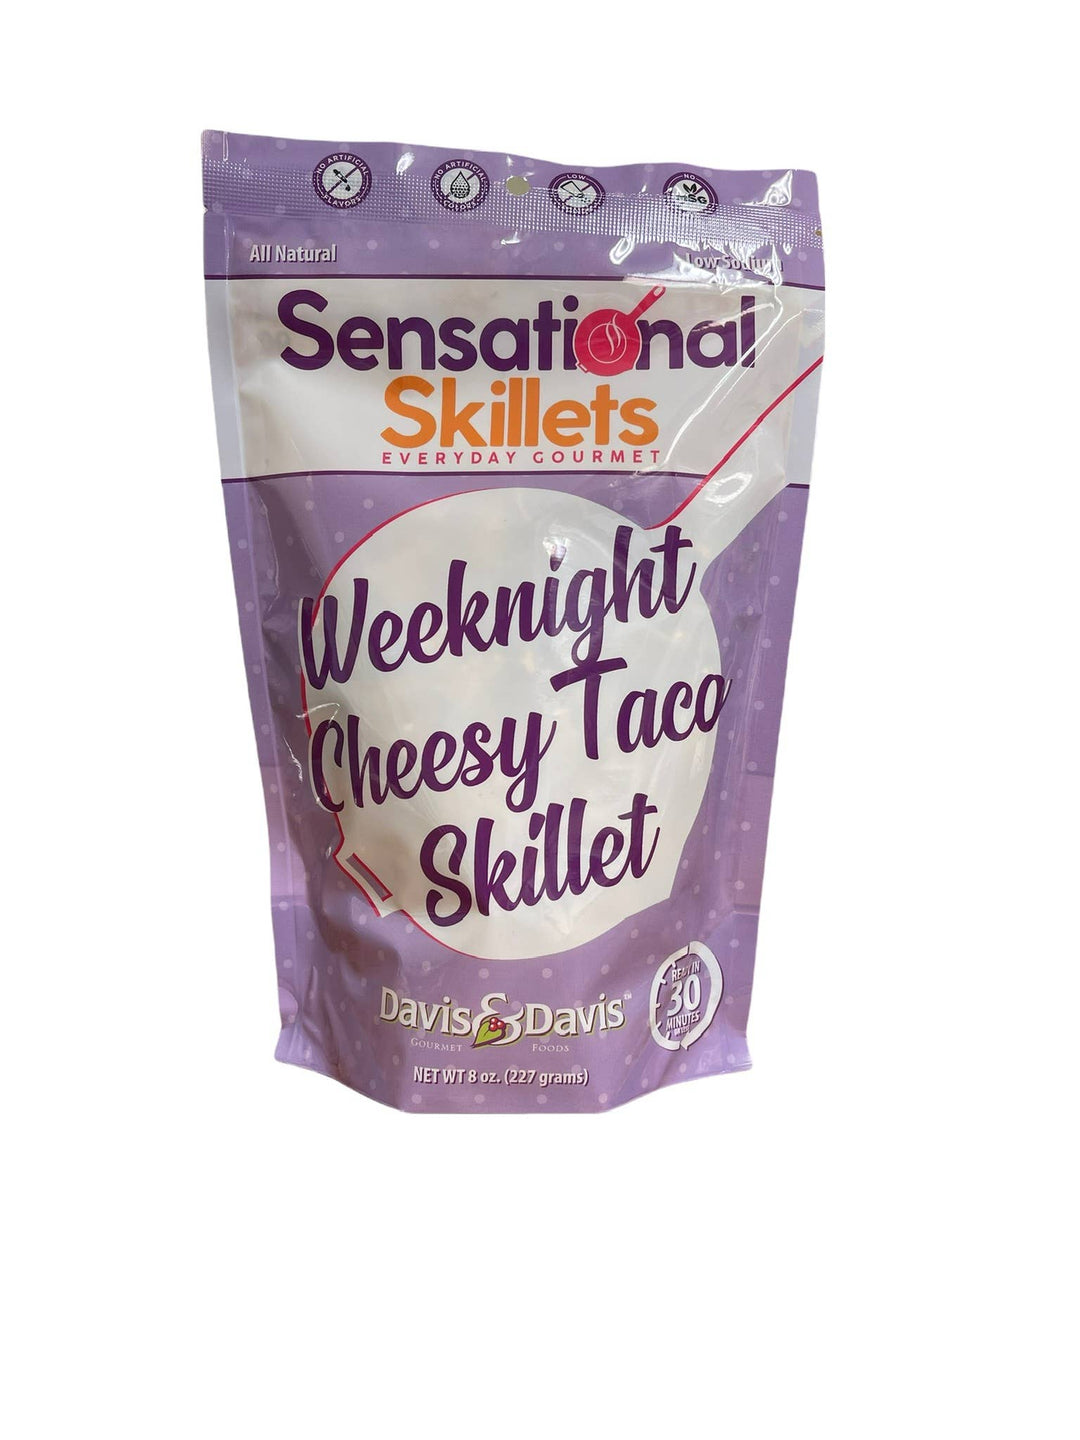 Weeknight Cheesy Taco Skillet